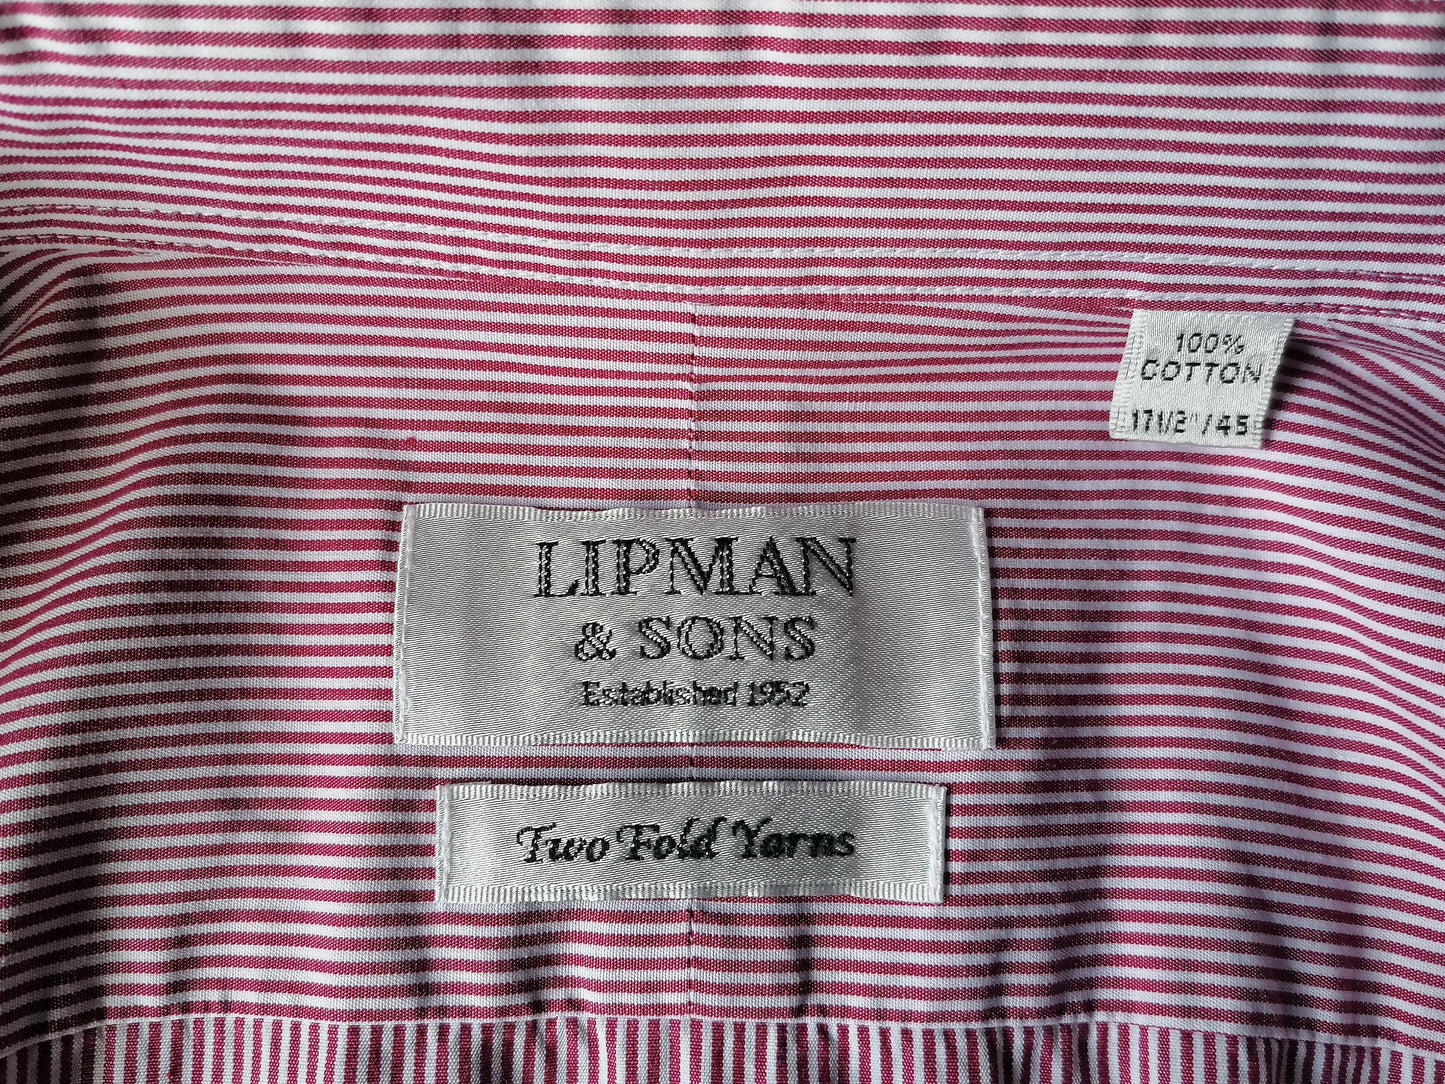 Shirt Lipman & Sons. Strisce bianche rosse. Dimensione 45 / xxl / 2xl. Tipo di nodo di cuffia. "Filato a due volte".